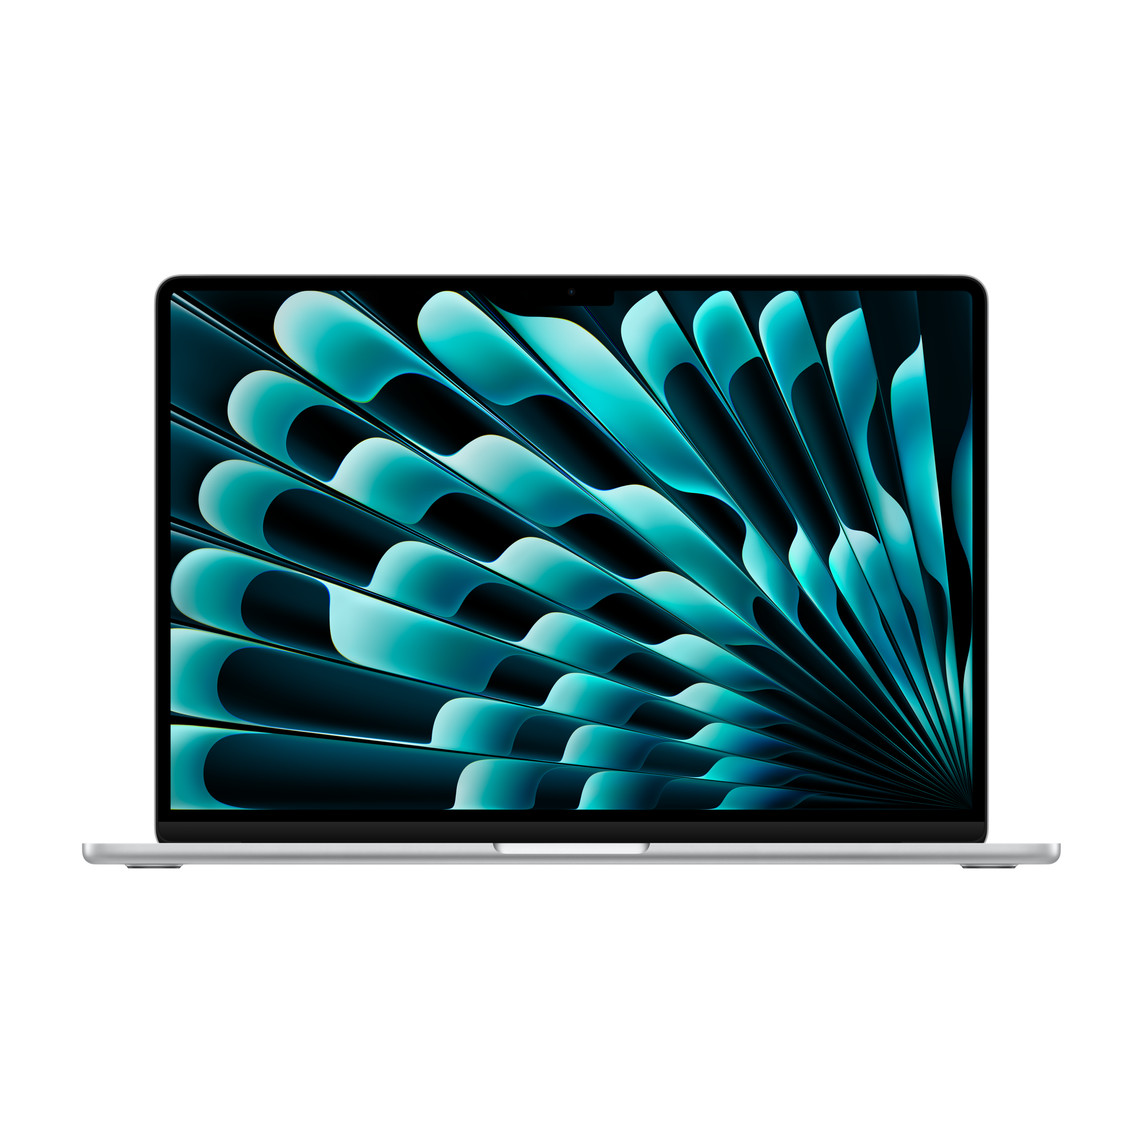 呈打开状态的银色 MacBook Air，展示细窄边框、FaceTime 高清摄像头、凸出的垫脚、曲边设计。